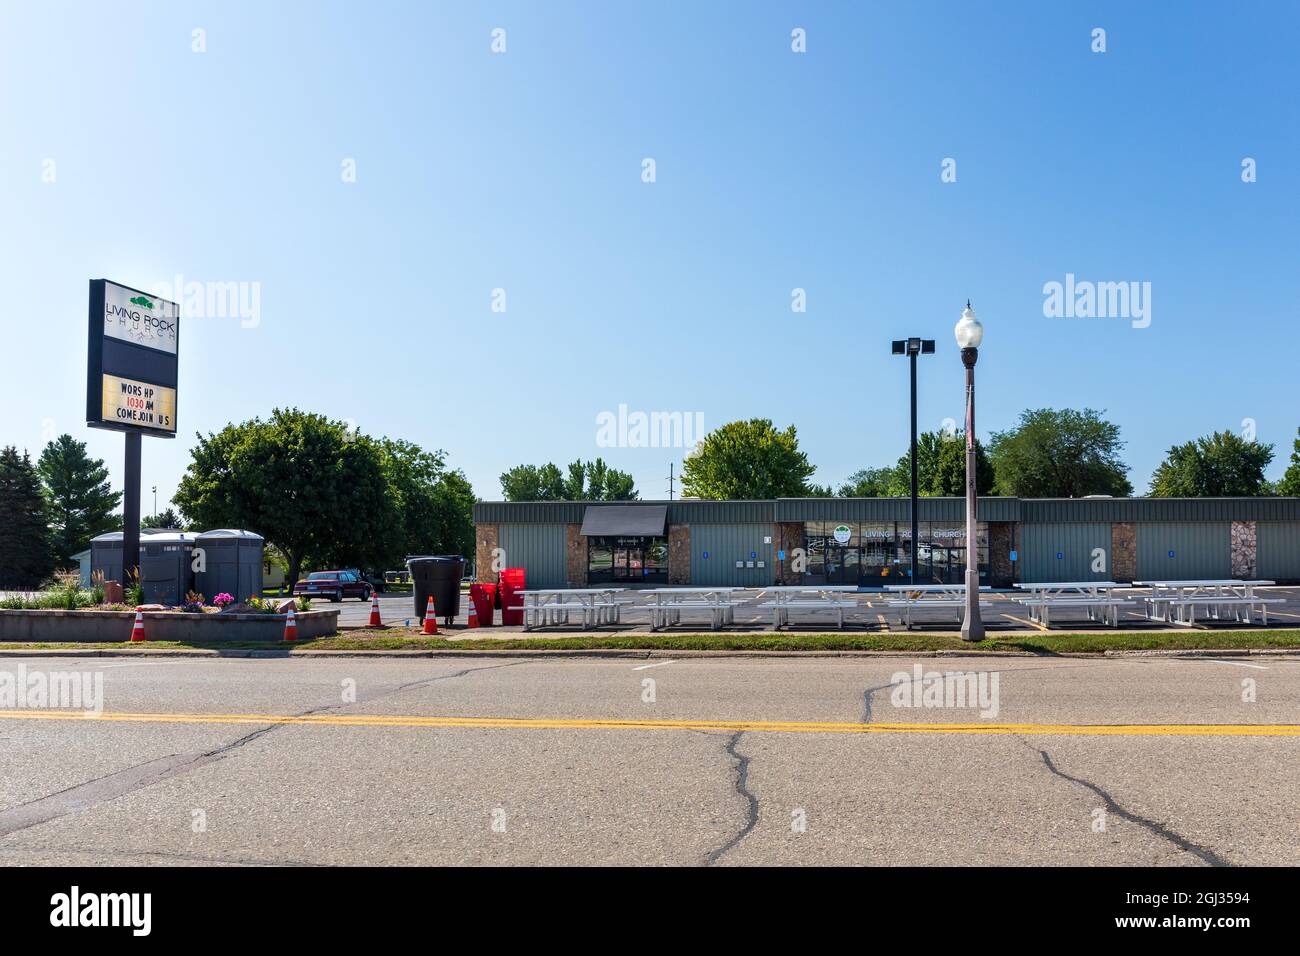 LUVERNE, MN, USA-21 AUGUST 2021: Die Living Rock Church in der Main Street zeigt Gebäude, Schilder, tragbare Toiletten und Picknicktische auf dem Parkplatz. Stockfoto